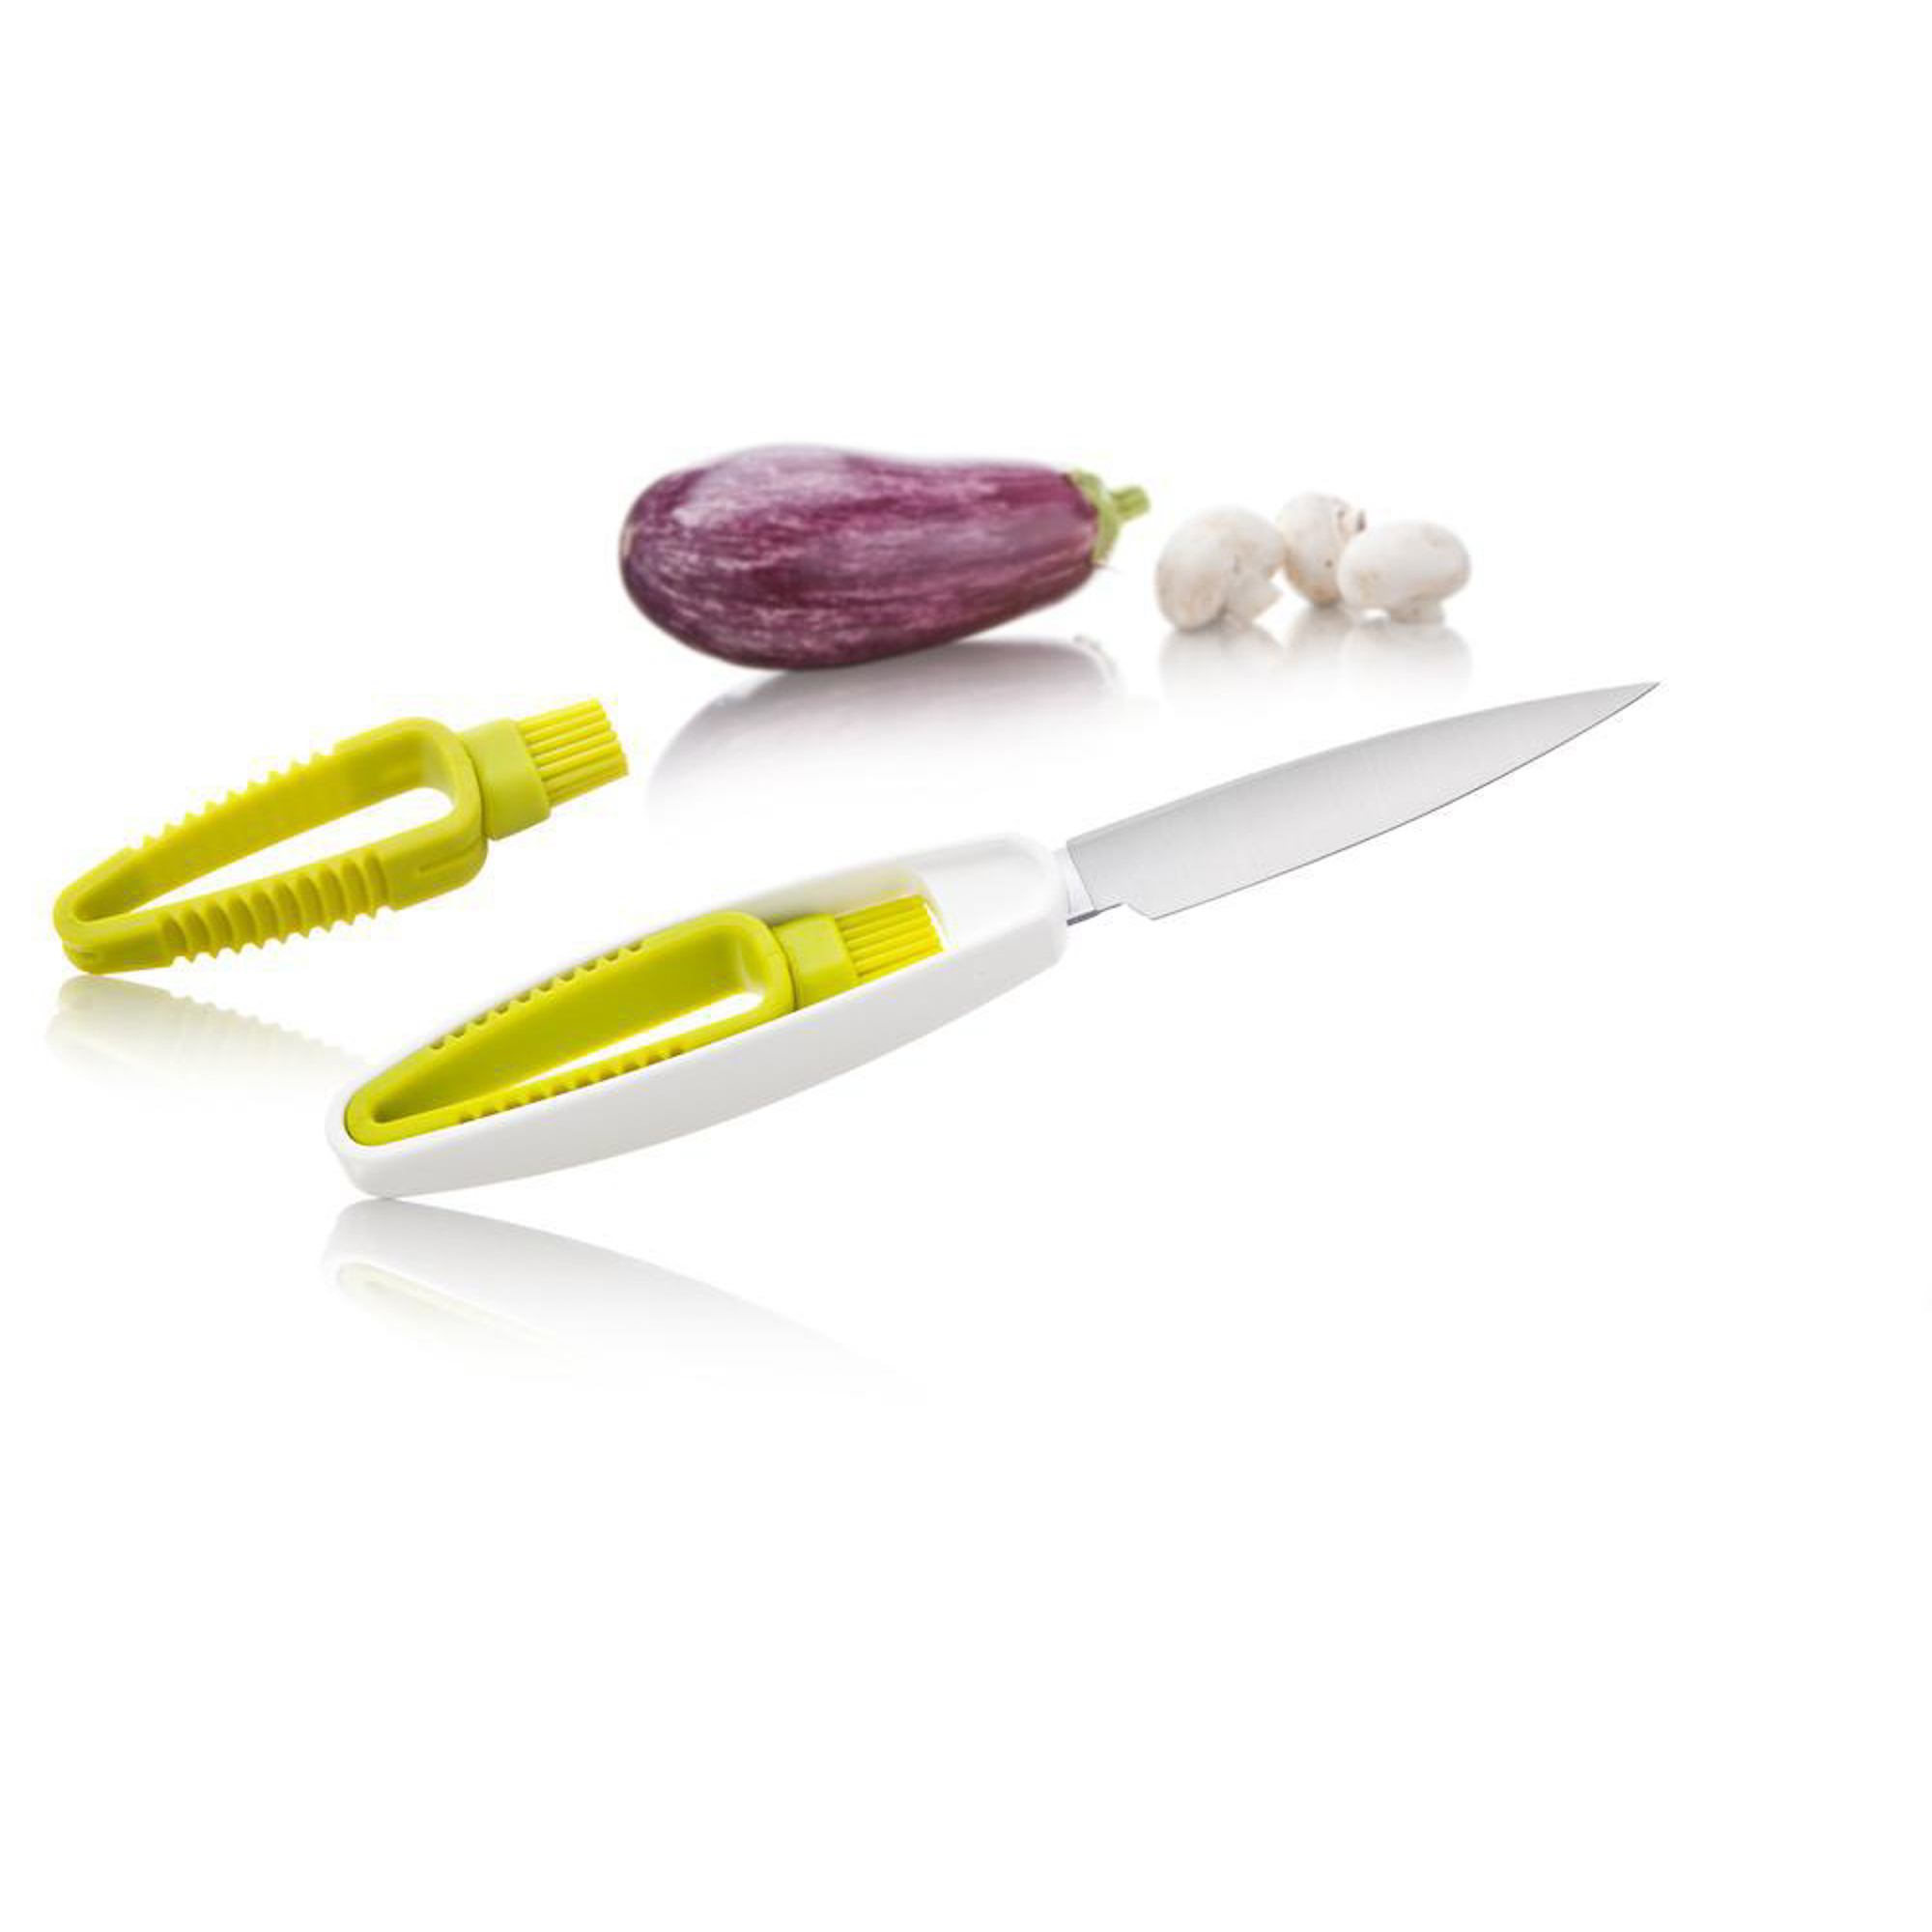 Нож для овощей со щеткой Tomorrow's kitchen jungle story мешочки со шнурком из хлопка для хранения и взвешивания фруктов и овощей